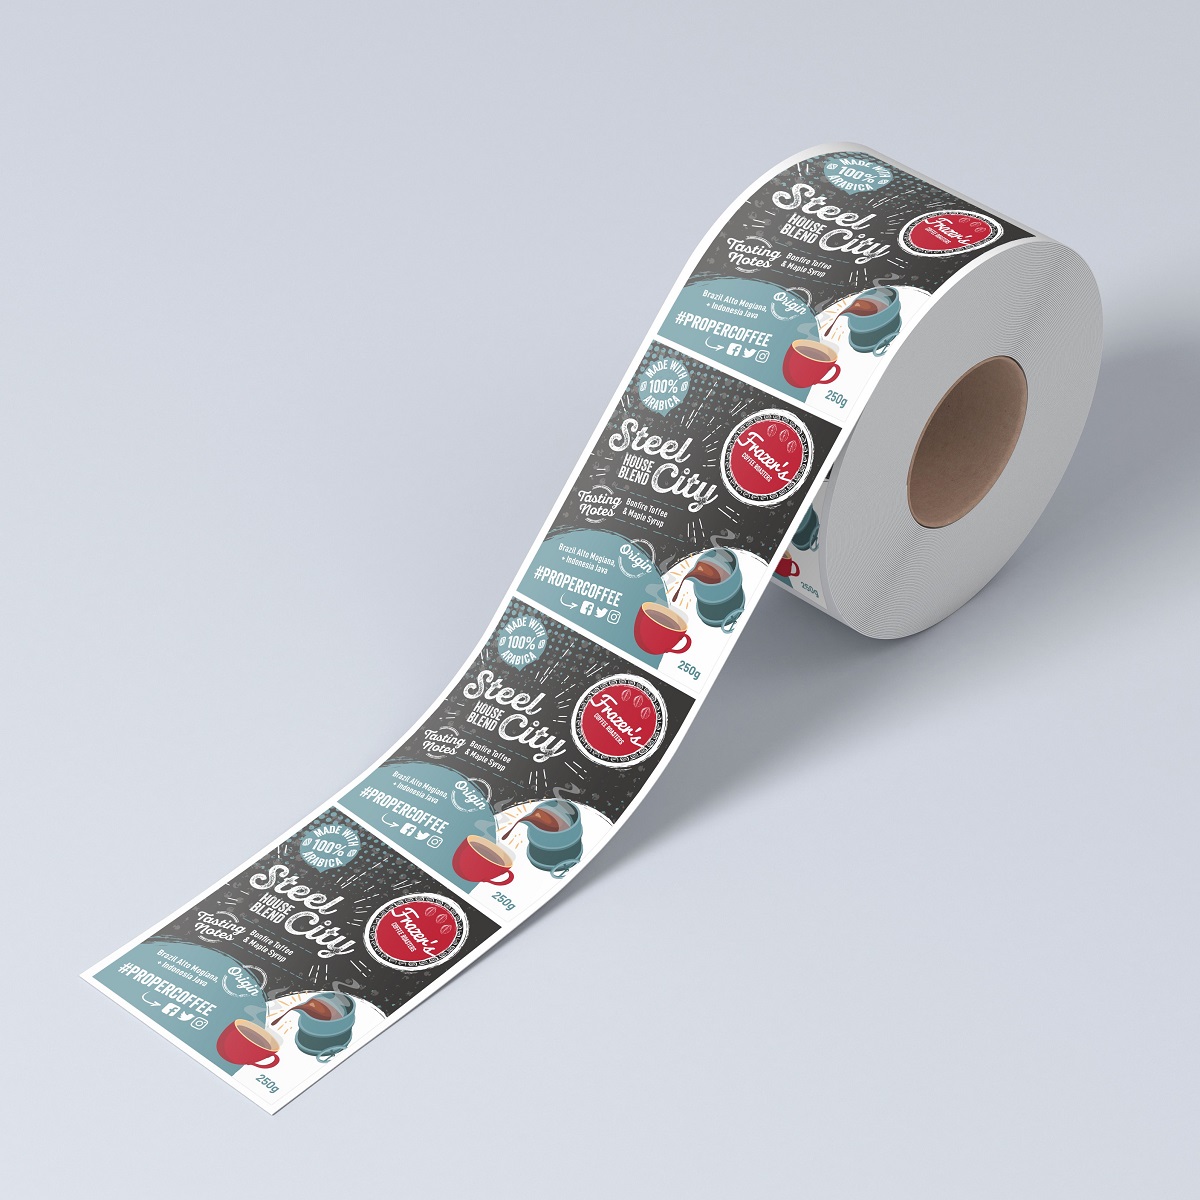 Chia sẻ hơn 82+ sticker roll dễ nhất - Co-Created English